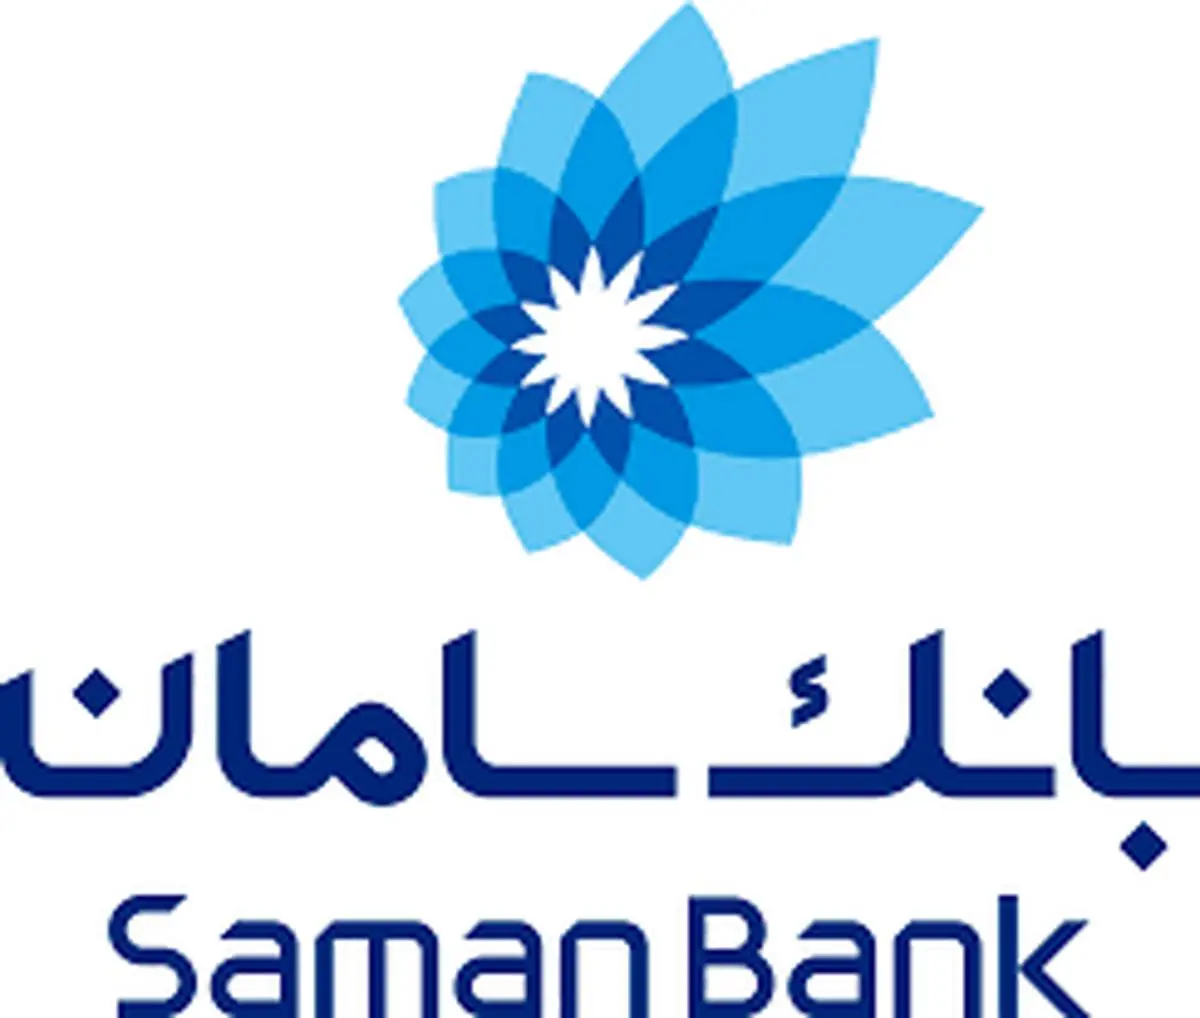 هشدار بانک سامان در خصوص صفحات جعلی نت بانک

